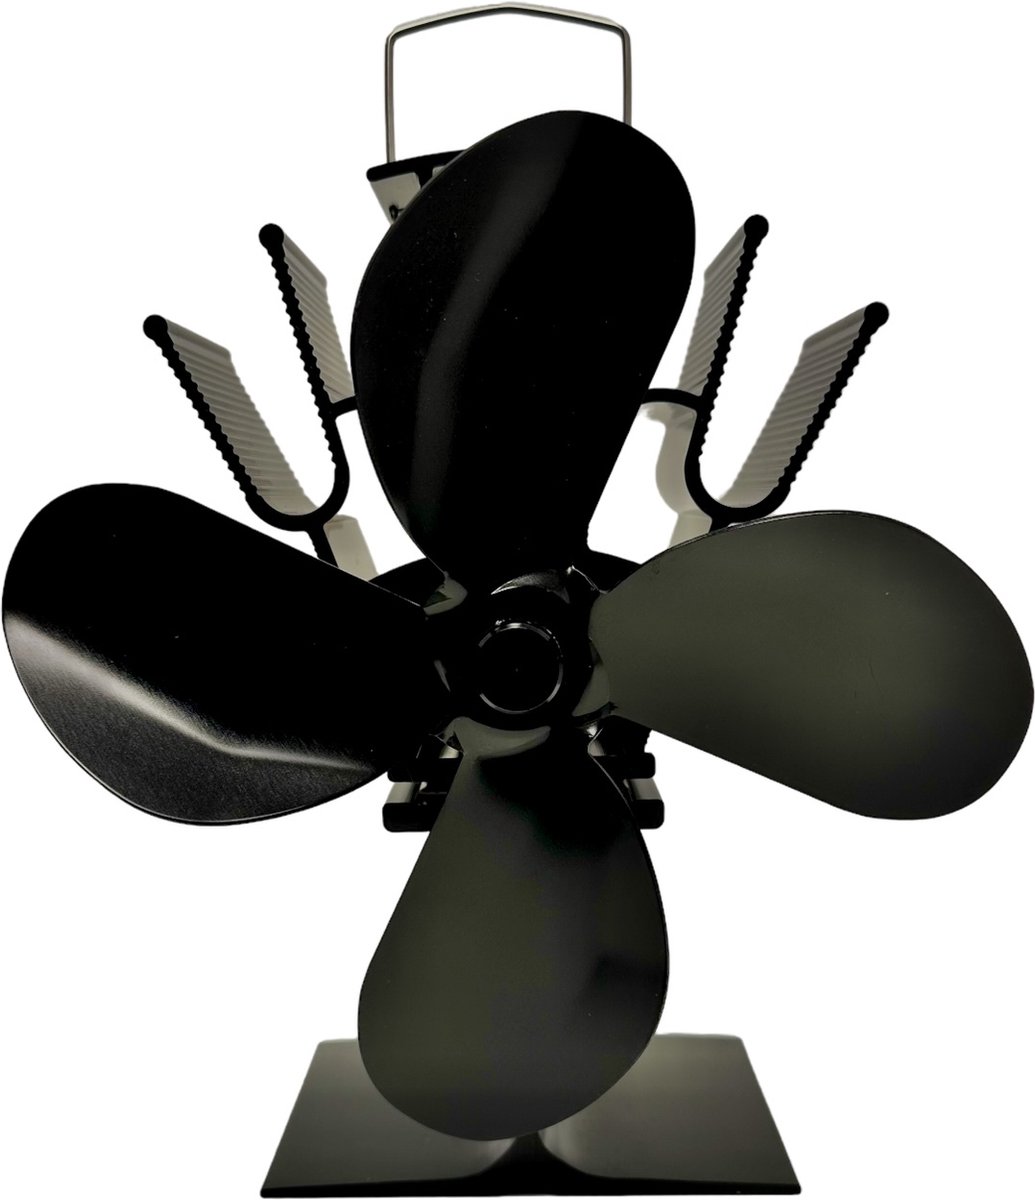 The Stove Fan | 4-blads energie besparende haardventilator | Groot 19 cm | Extra curve propeller bladen voor meer lucht verplaatsing | Kachelventilator Haardventilator Eco fan ventilator